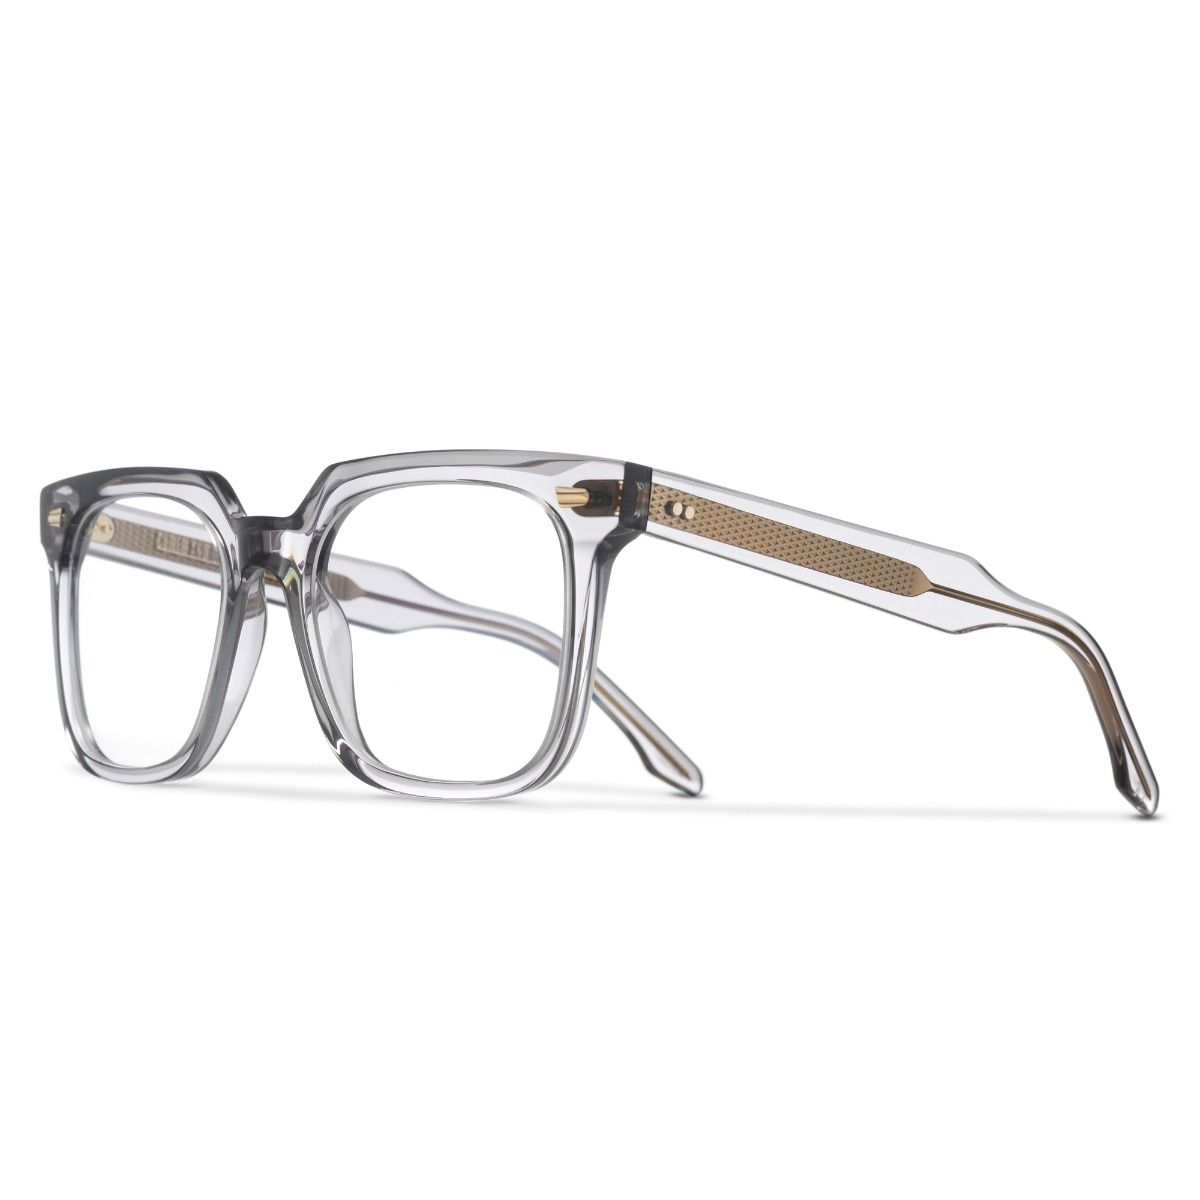 Cutler and Gross, 1387 Optical Square Glasses - Smoke Quartz